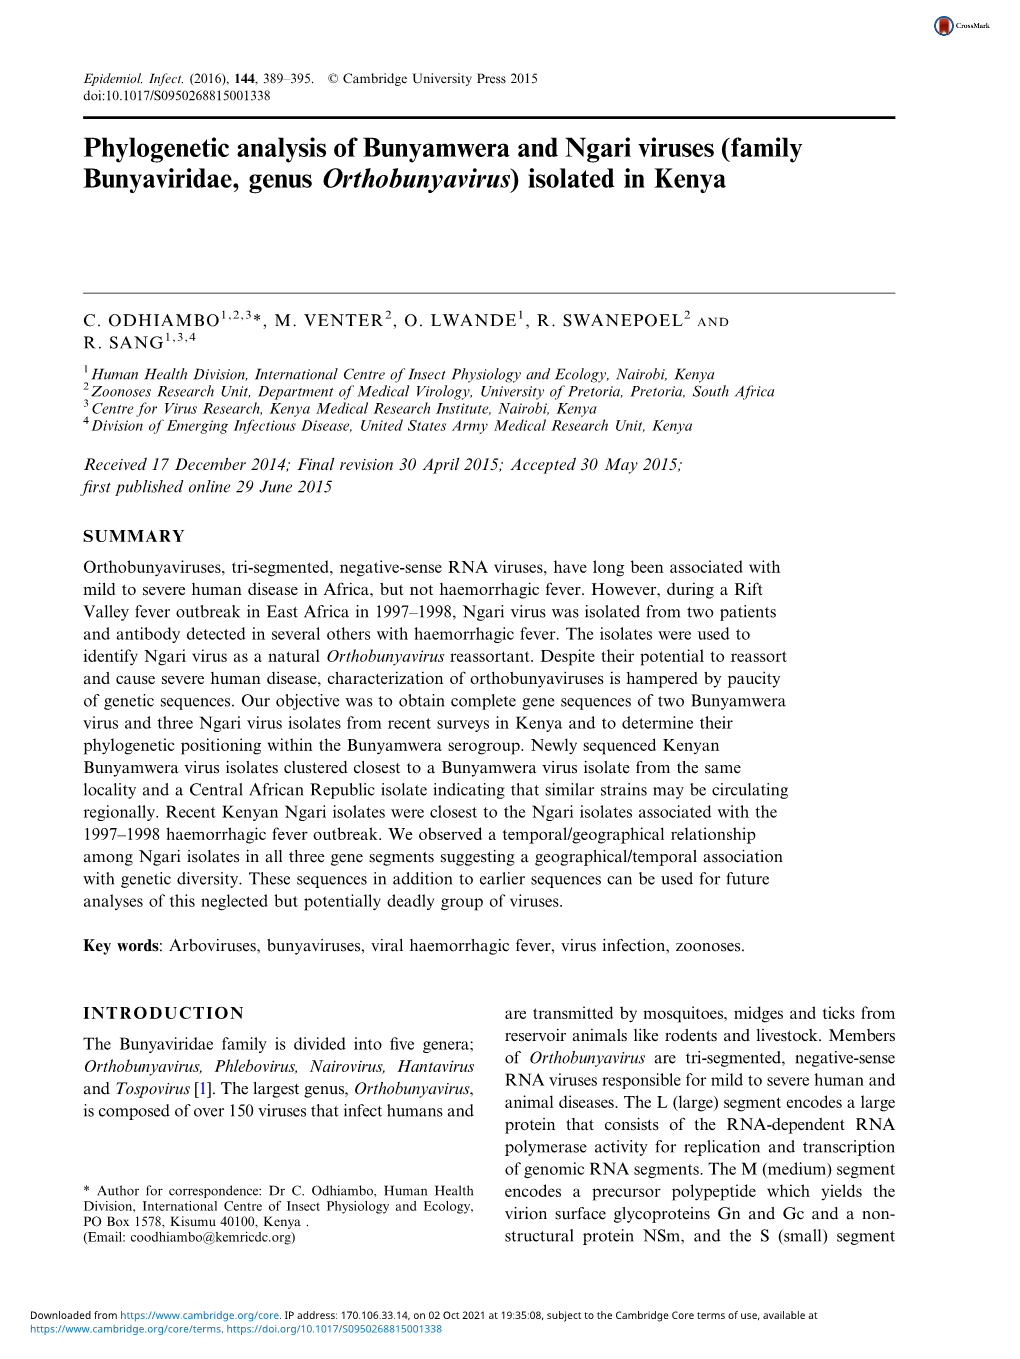 Phylogenetic Analysis of Bunyamwera and Ngari Viruses (Family Bunyaviridae, Genus Orthobunyavirus) Isolated in Kenya